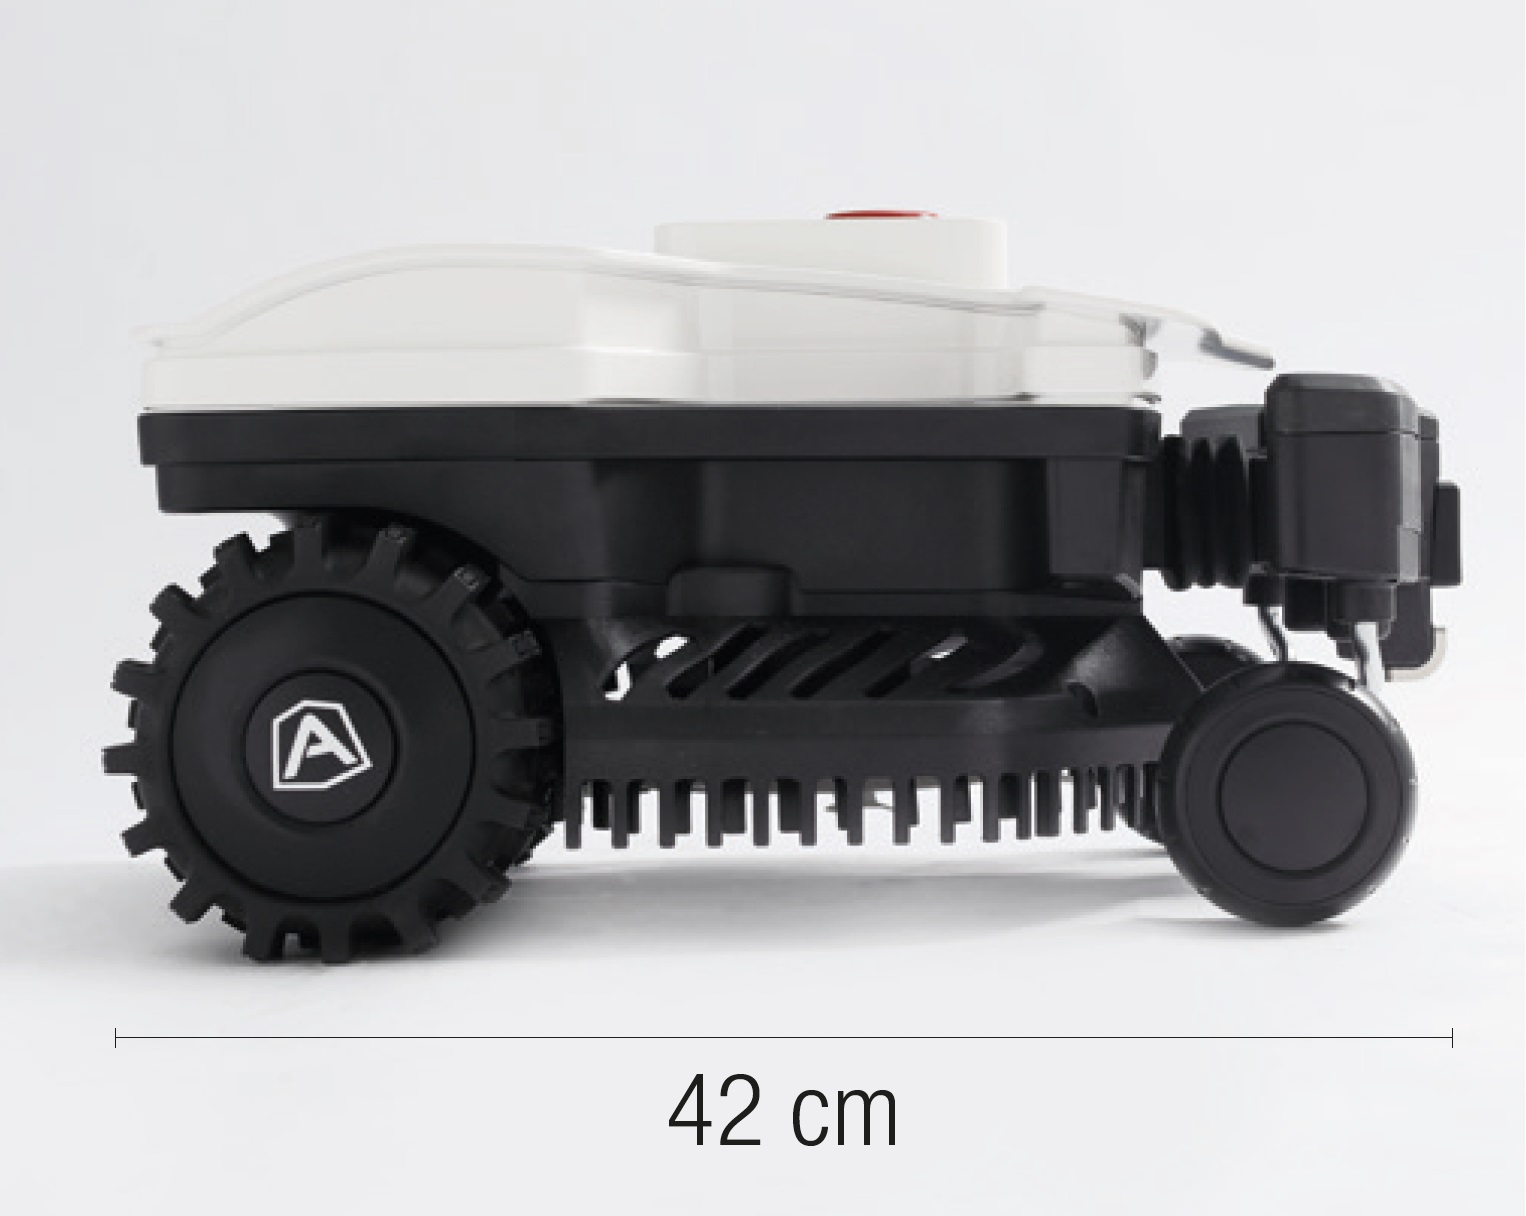 Ambrogio Twenty Elite Robotic Lawnmower RRP £1549